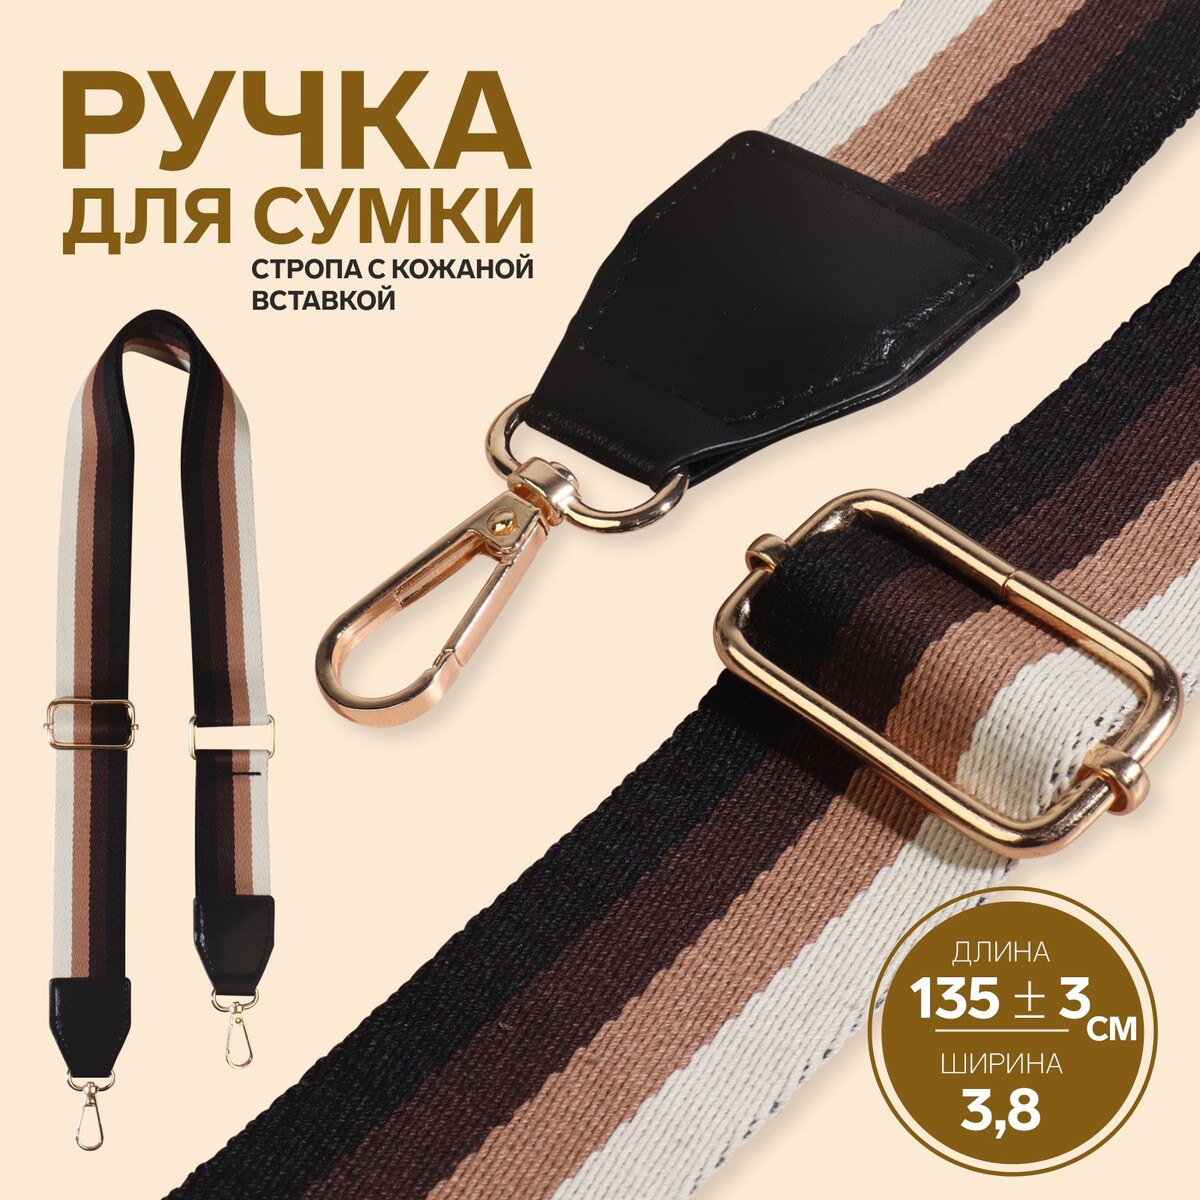 Ручка для сумки, стропа с кожаной вставкой, 139 ± 3 × 3,8 см, цвет черный/коричневый/песочный/золотой набор аппликаторов для теней двусторонние 5 шт 5 5 см цвет розовый золотой